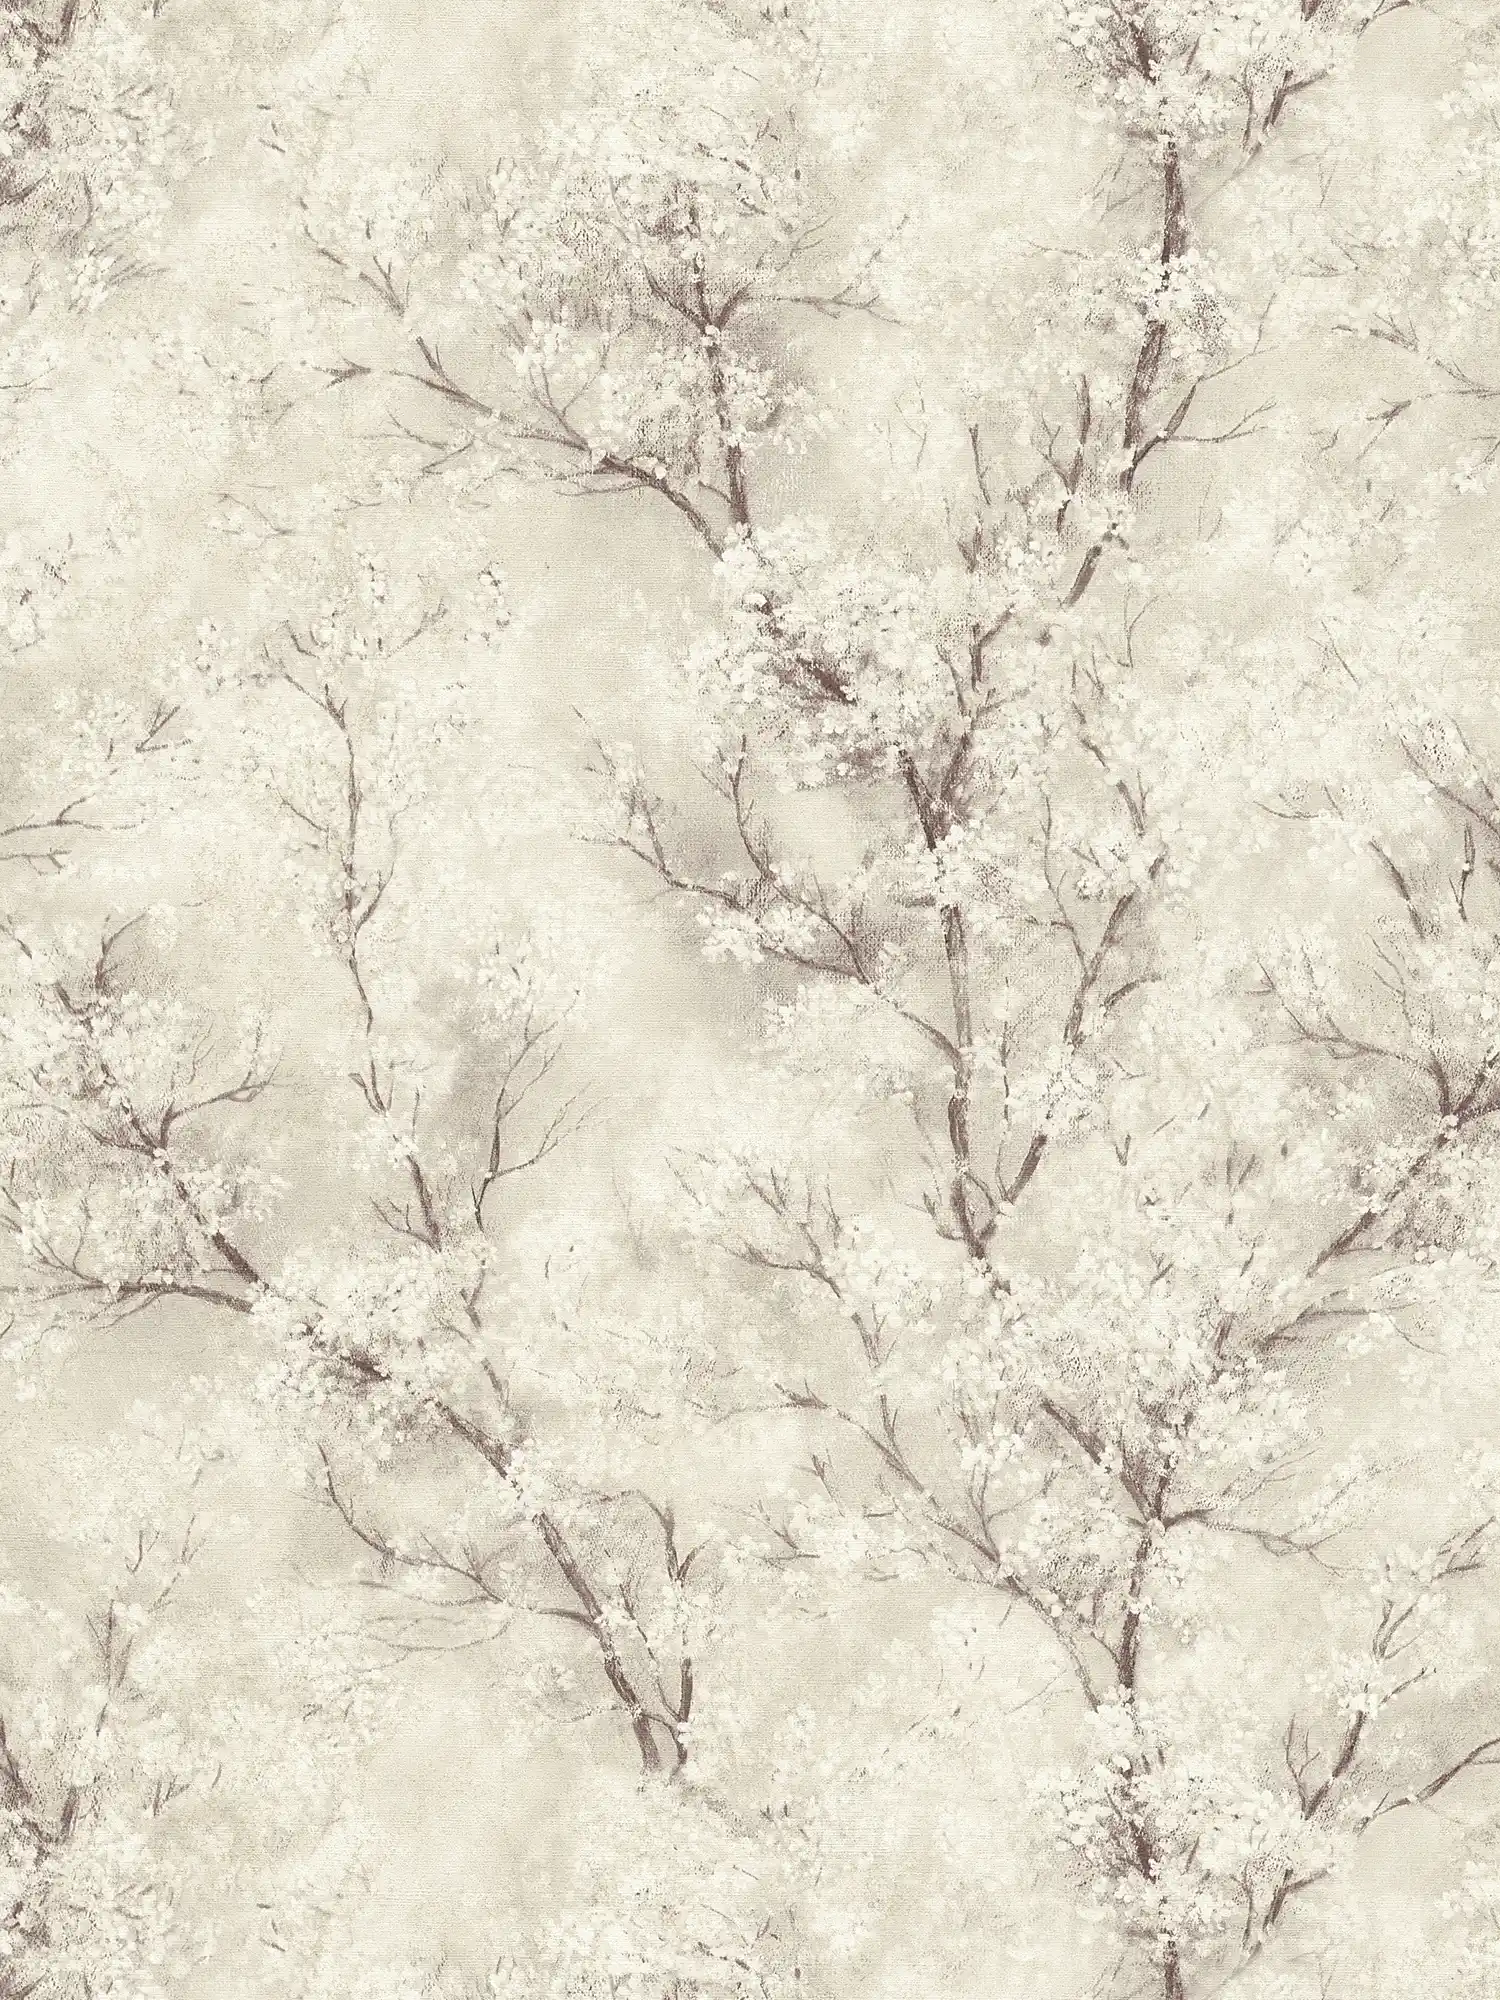         Papier peint Fleurs de cerisier Effet scintillant - crème, gris, blanc
    